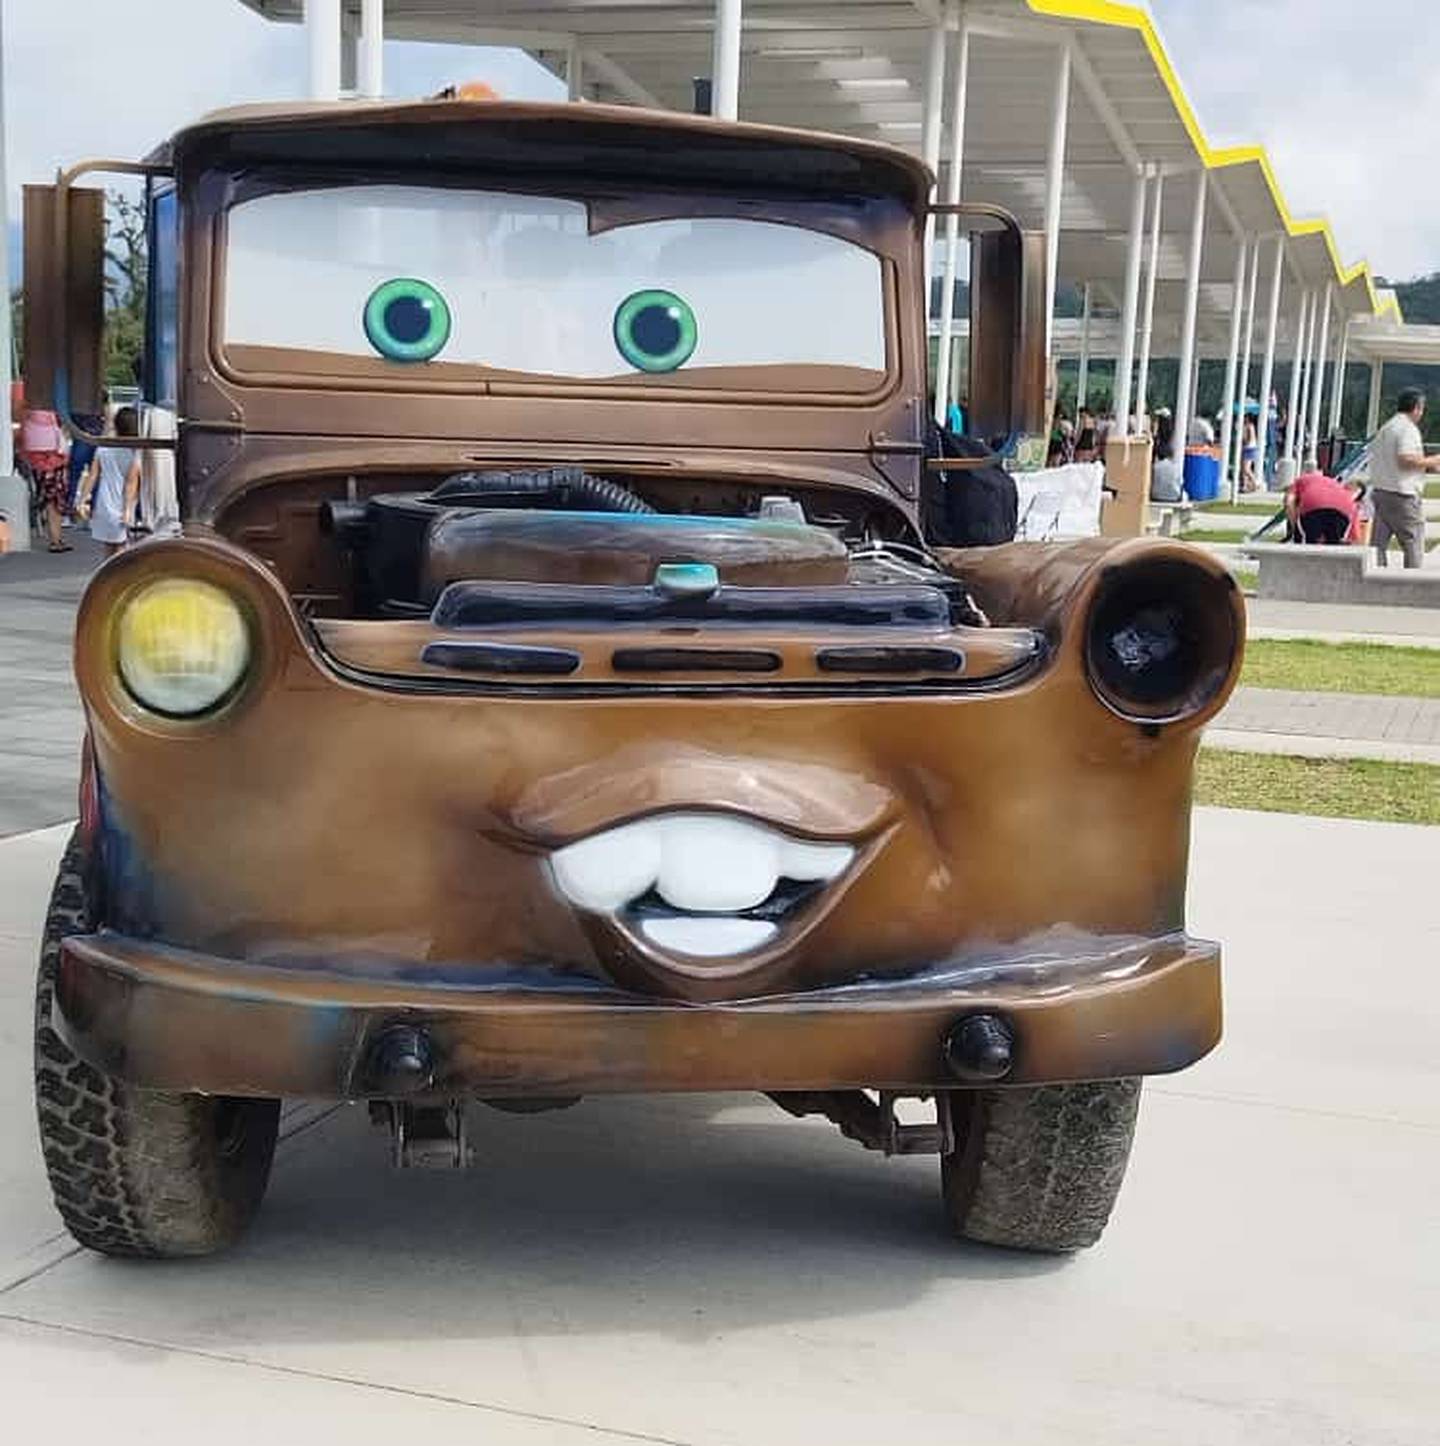 Los protagonistas de la película "Cars" le esperan este fin de semana en el centro comercial Escazú Village. Cortesía.